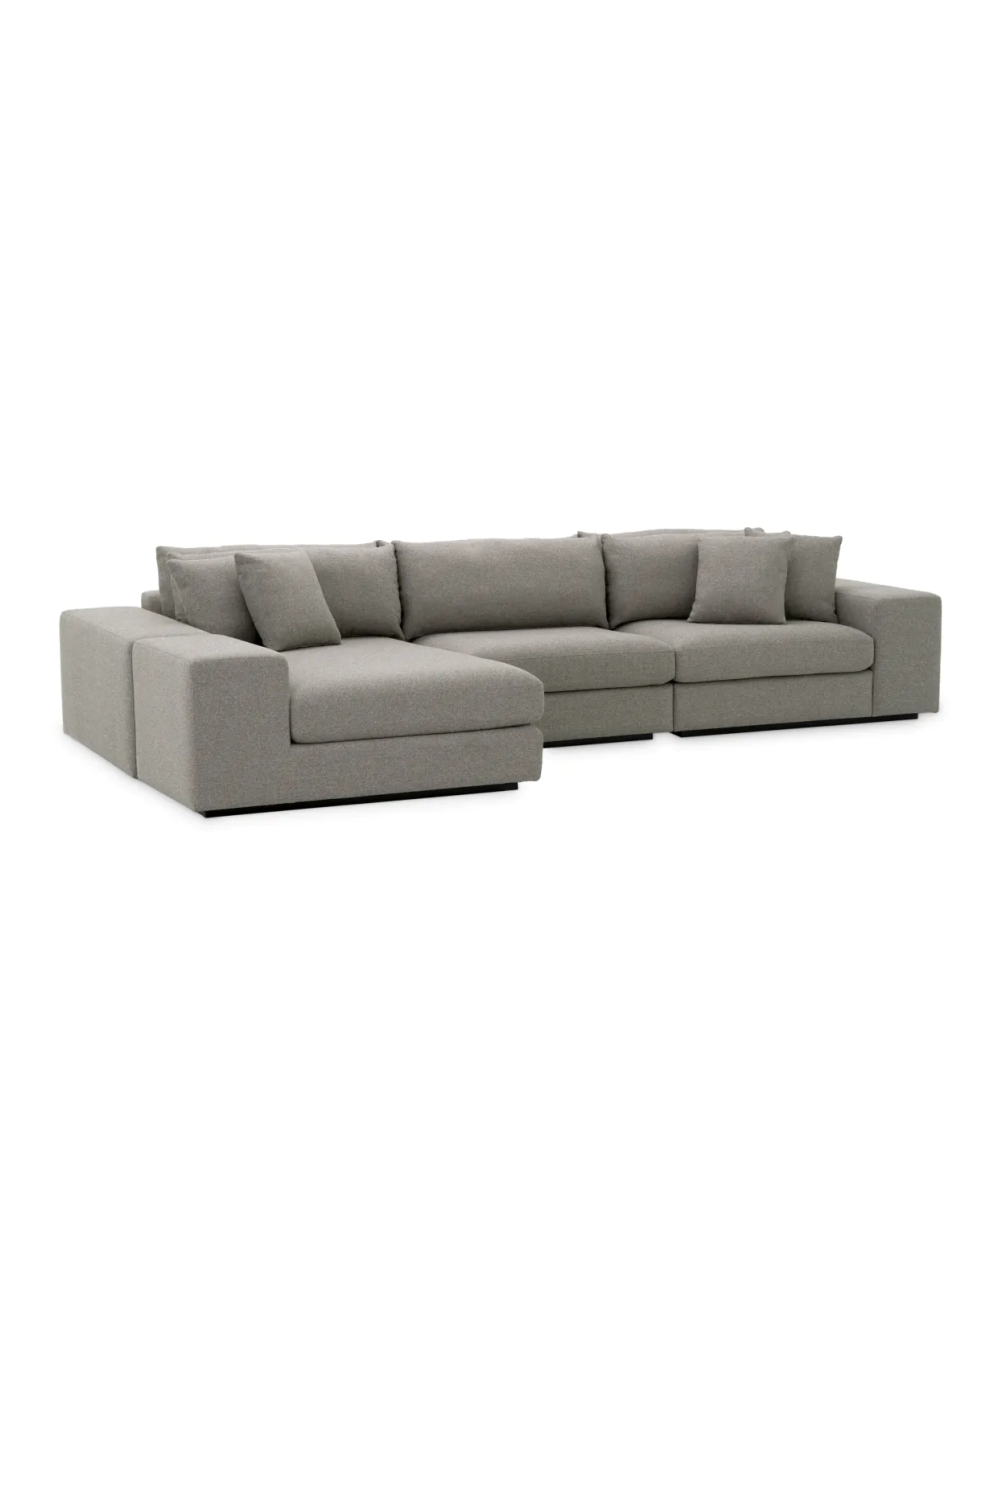 Gray Sectional Sofa | Eichholtz Vista Grande | Oroa.com